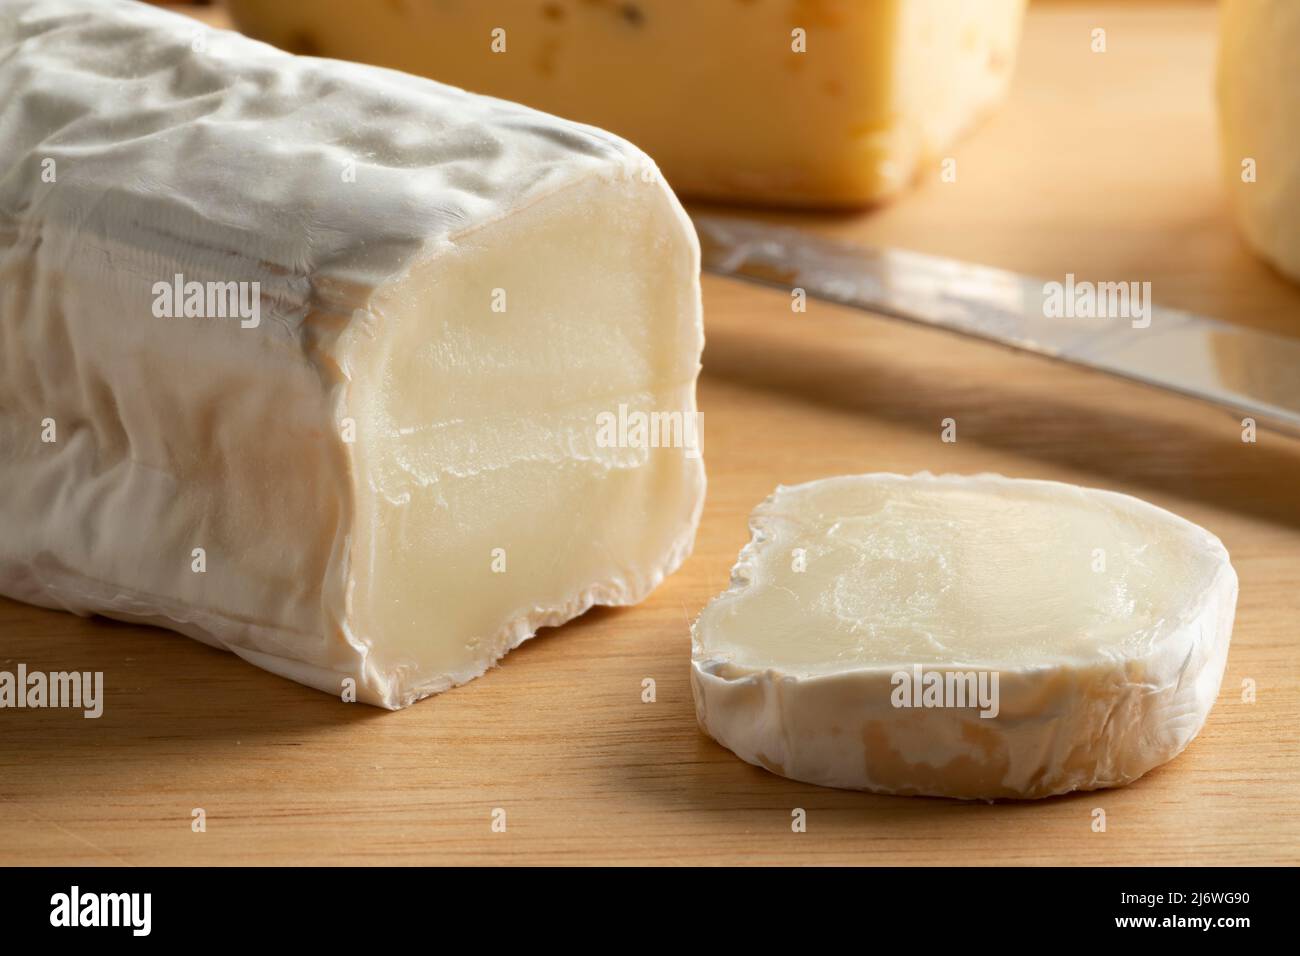 Buche de Chevre, formaggio di capra, con una cotenna bianca e una fetta su un tagliere da vicino Foto Stock